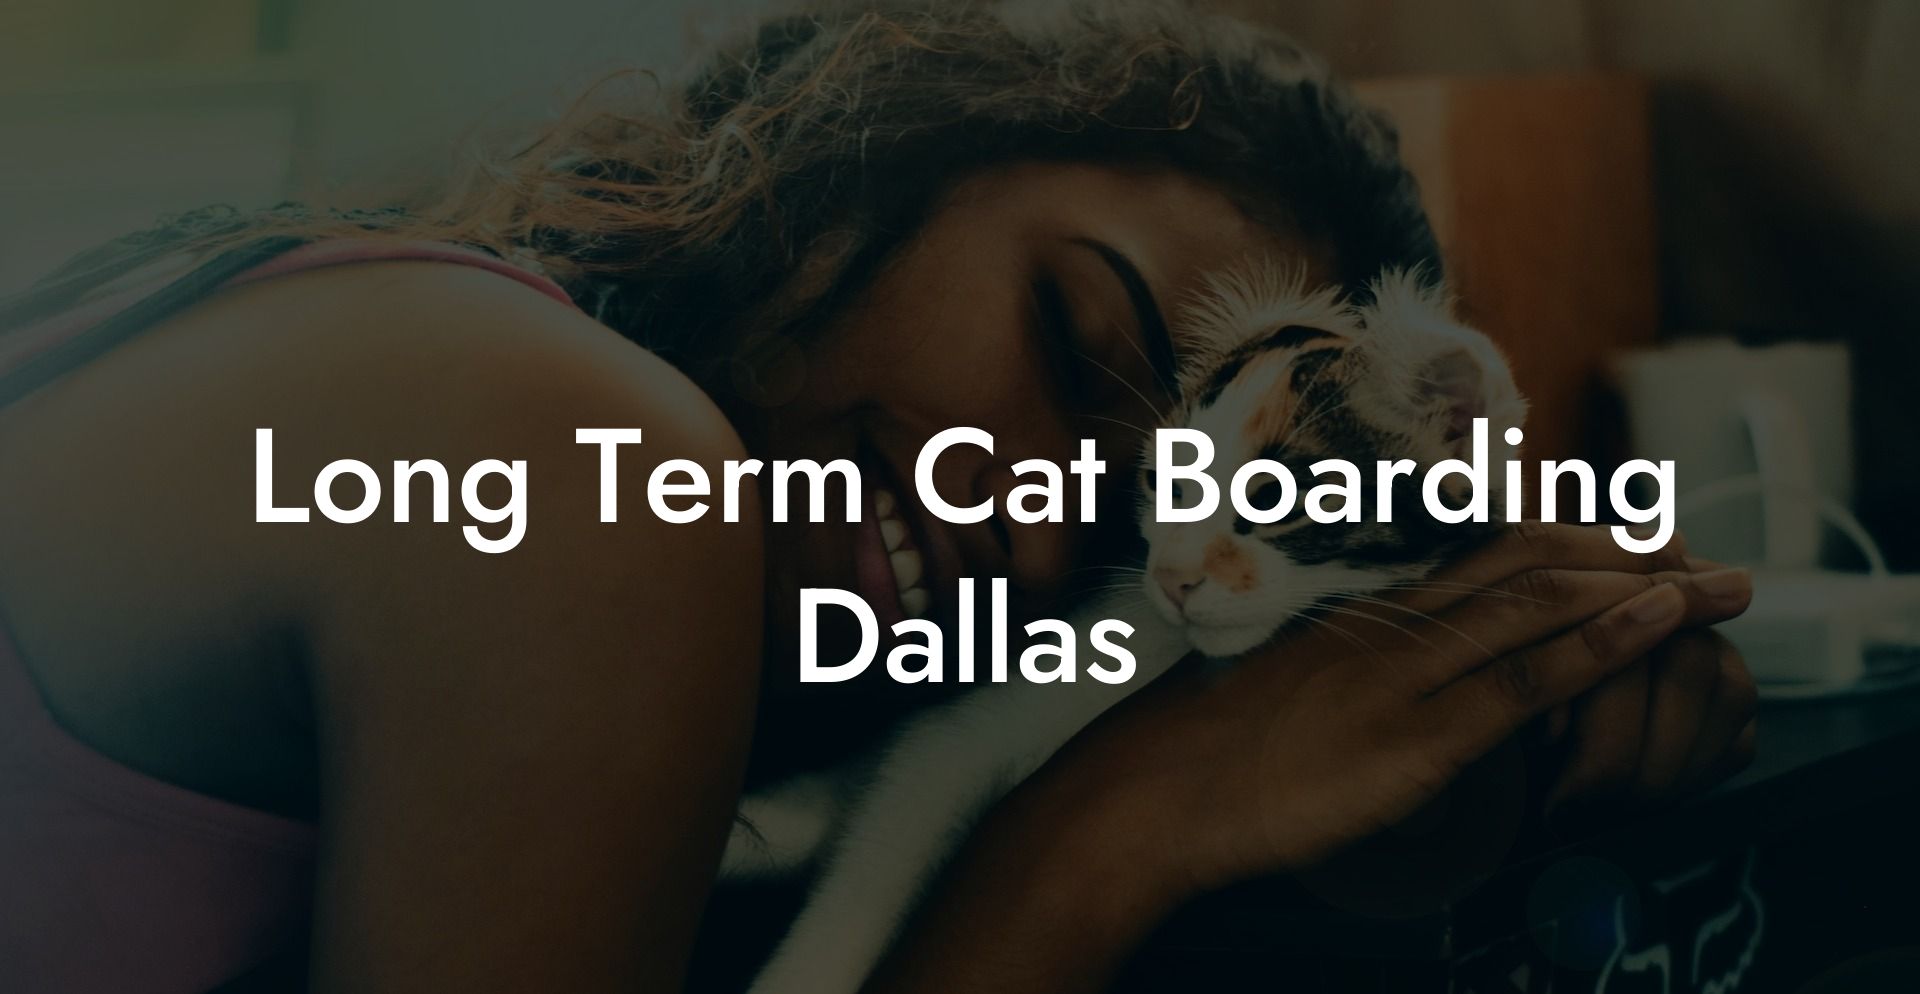 Long Term Cat Boarding Dallas